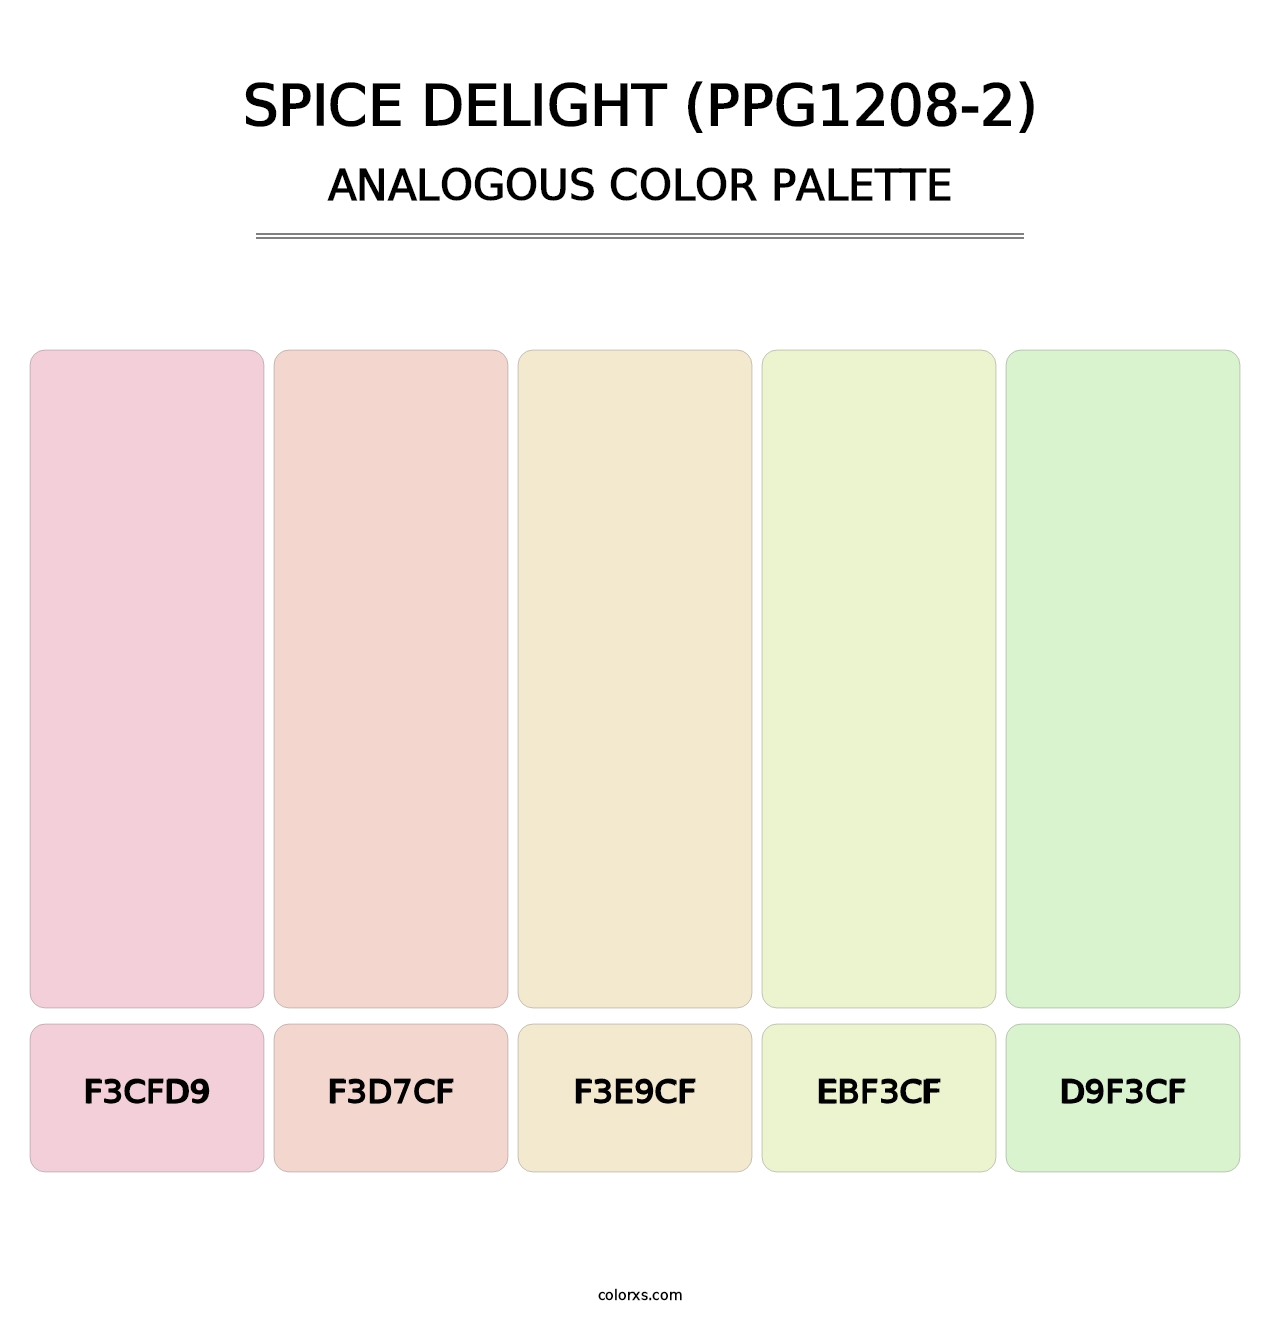 Spice Delight (PPG1208-2) - Analogous Color Palette